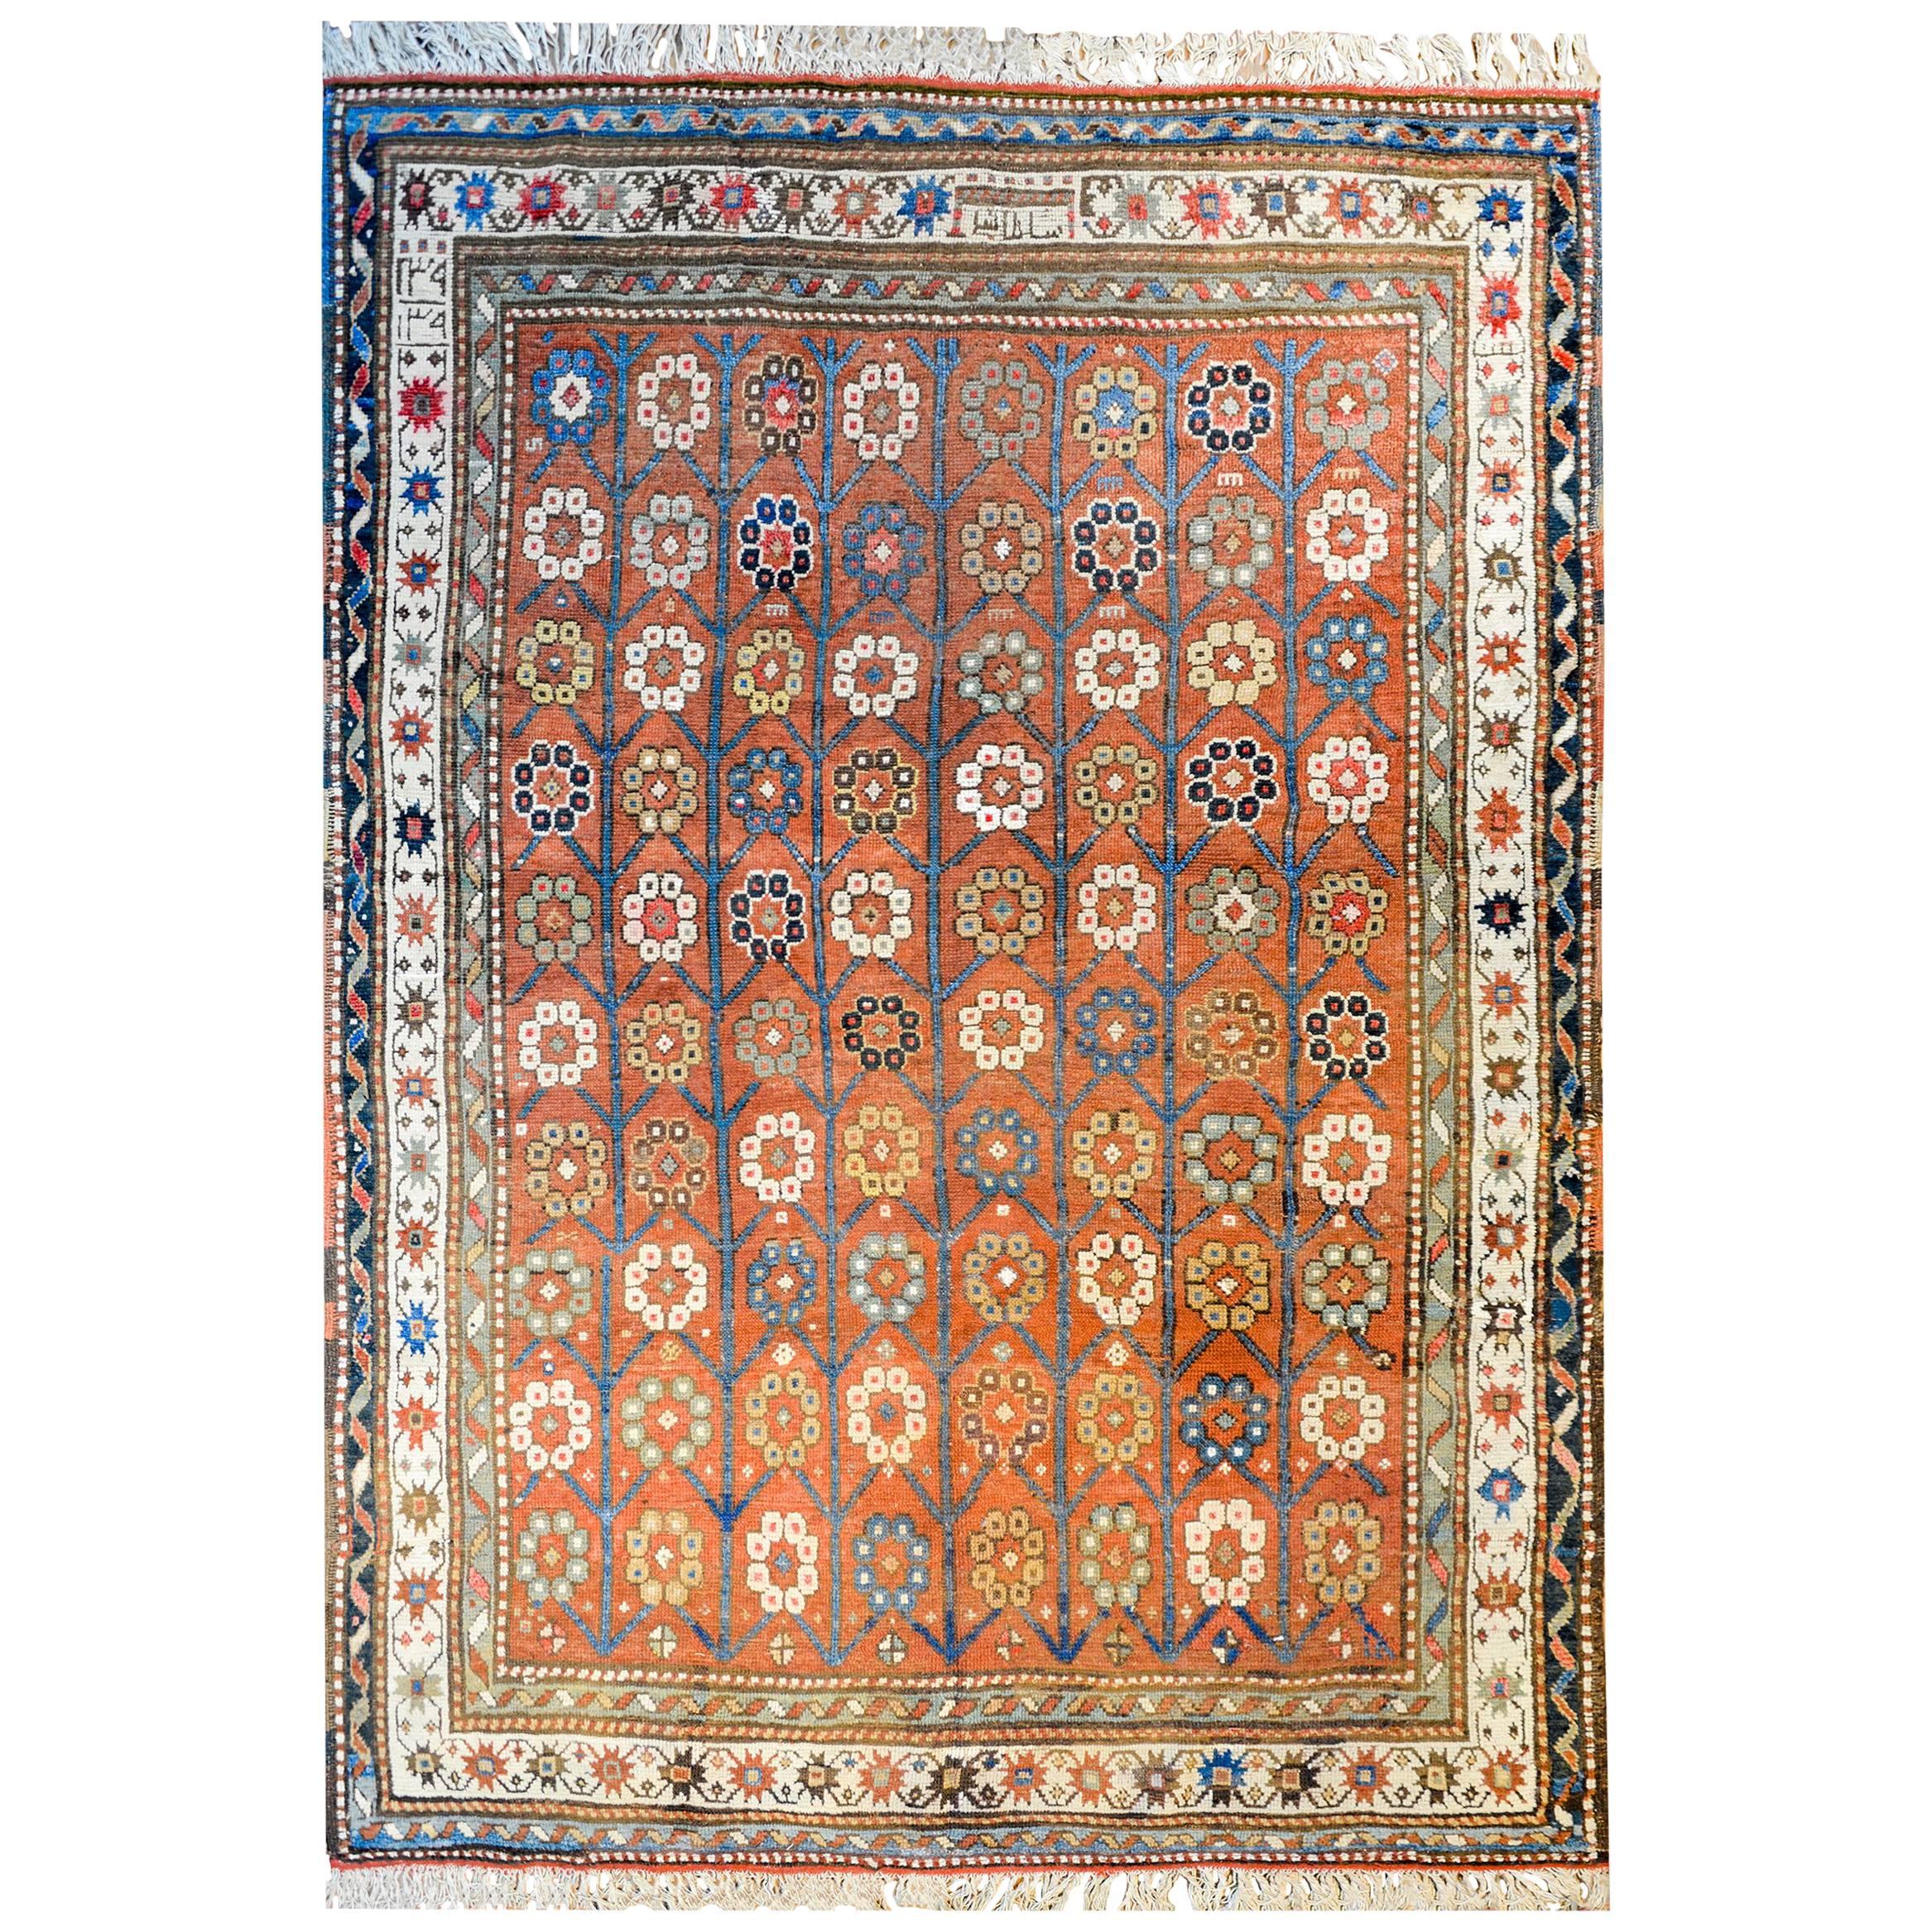 Unglaublicher Karabak-Teppich aus dem frühen 20. Jahrhundert